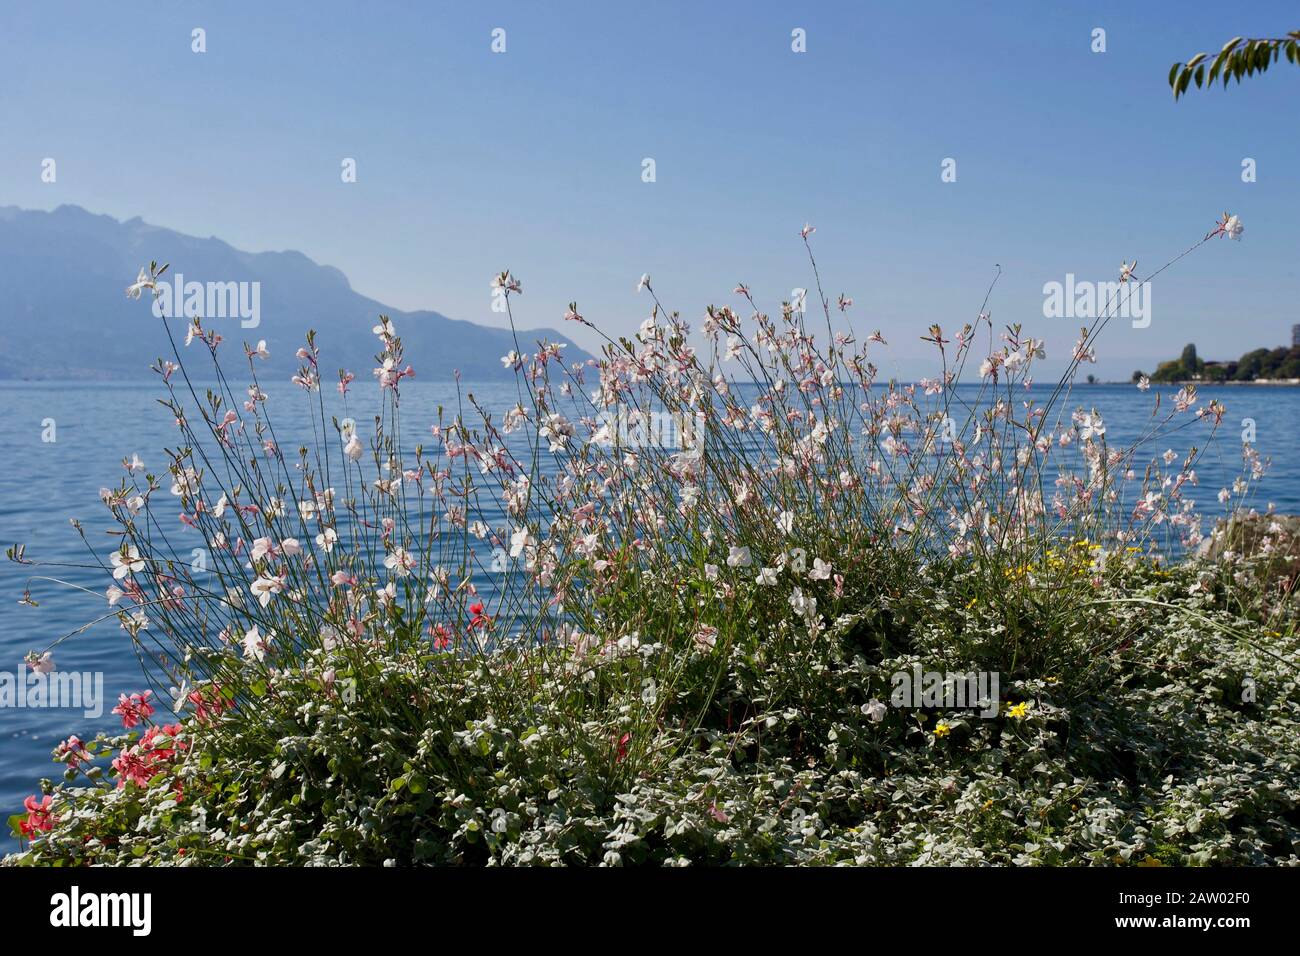 Montreux - Lago di Ginevra Montreux è un comune e una città svizzera sul litorale del Lago di Ginevra ai piedi delle Alpi. Appartiene al distretto Foto Stock